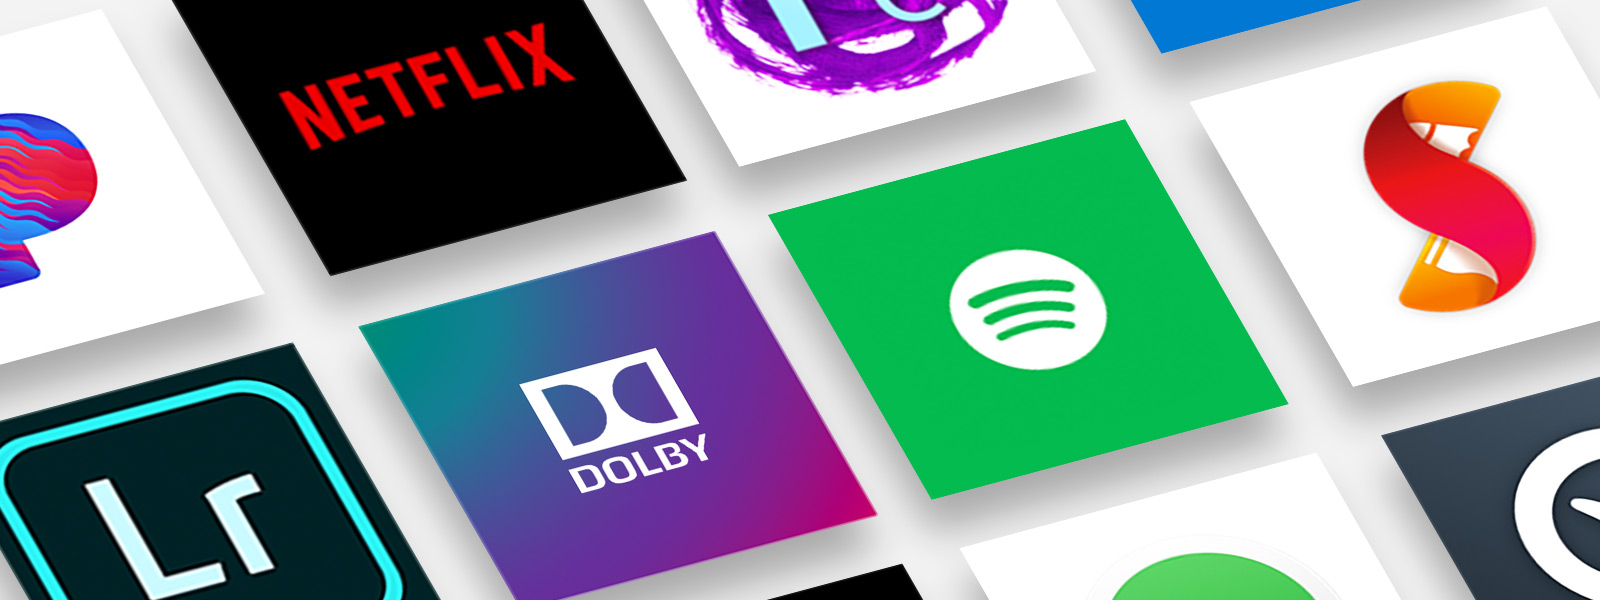 Many popular application logos